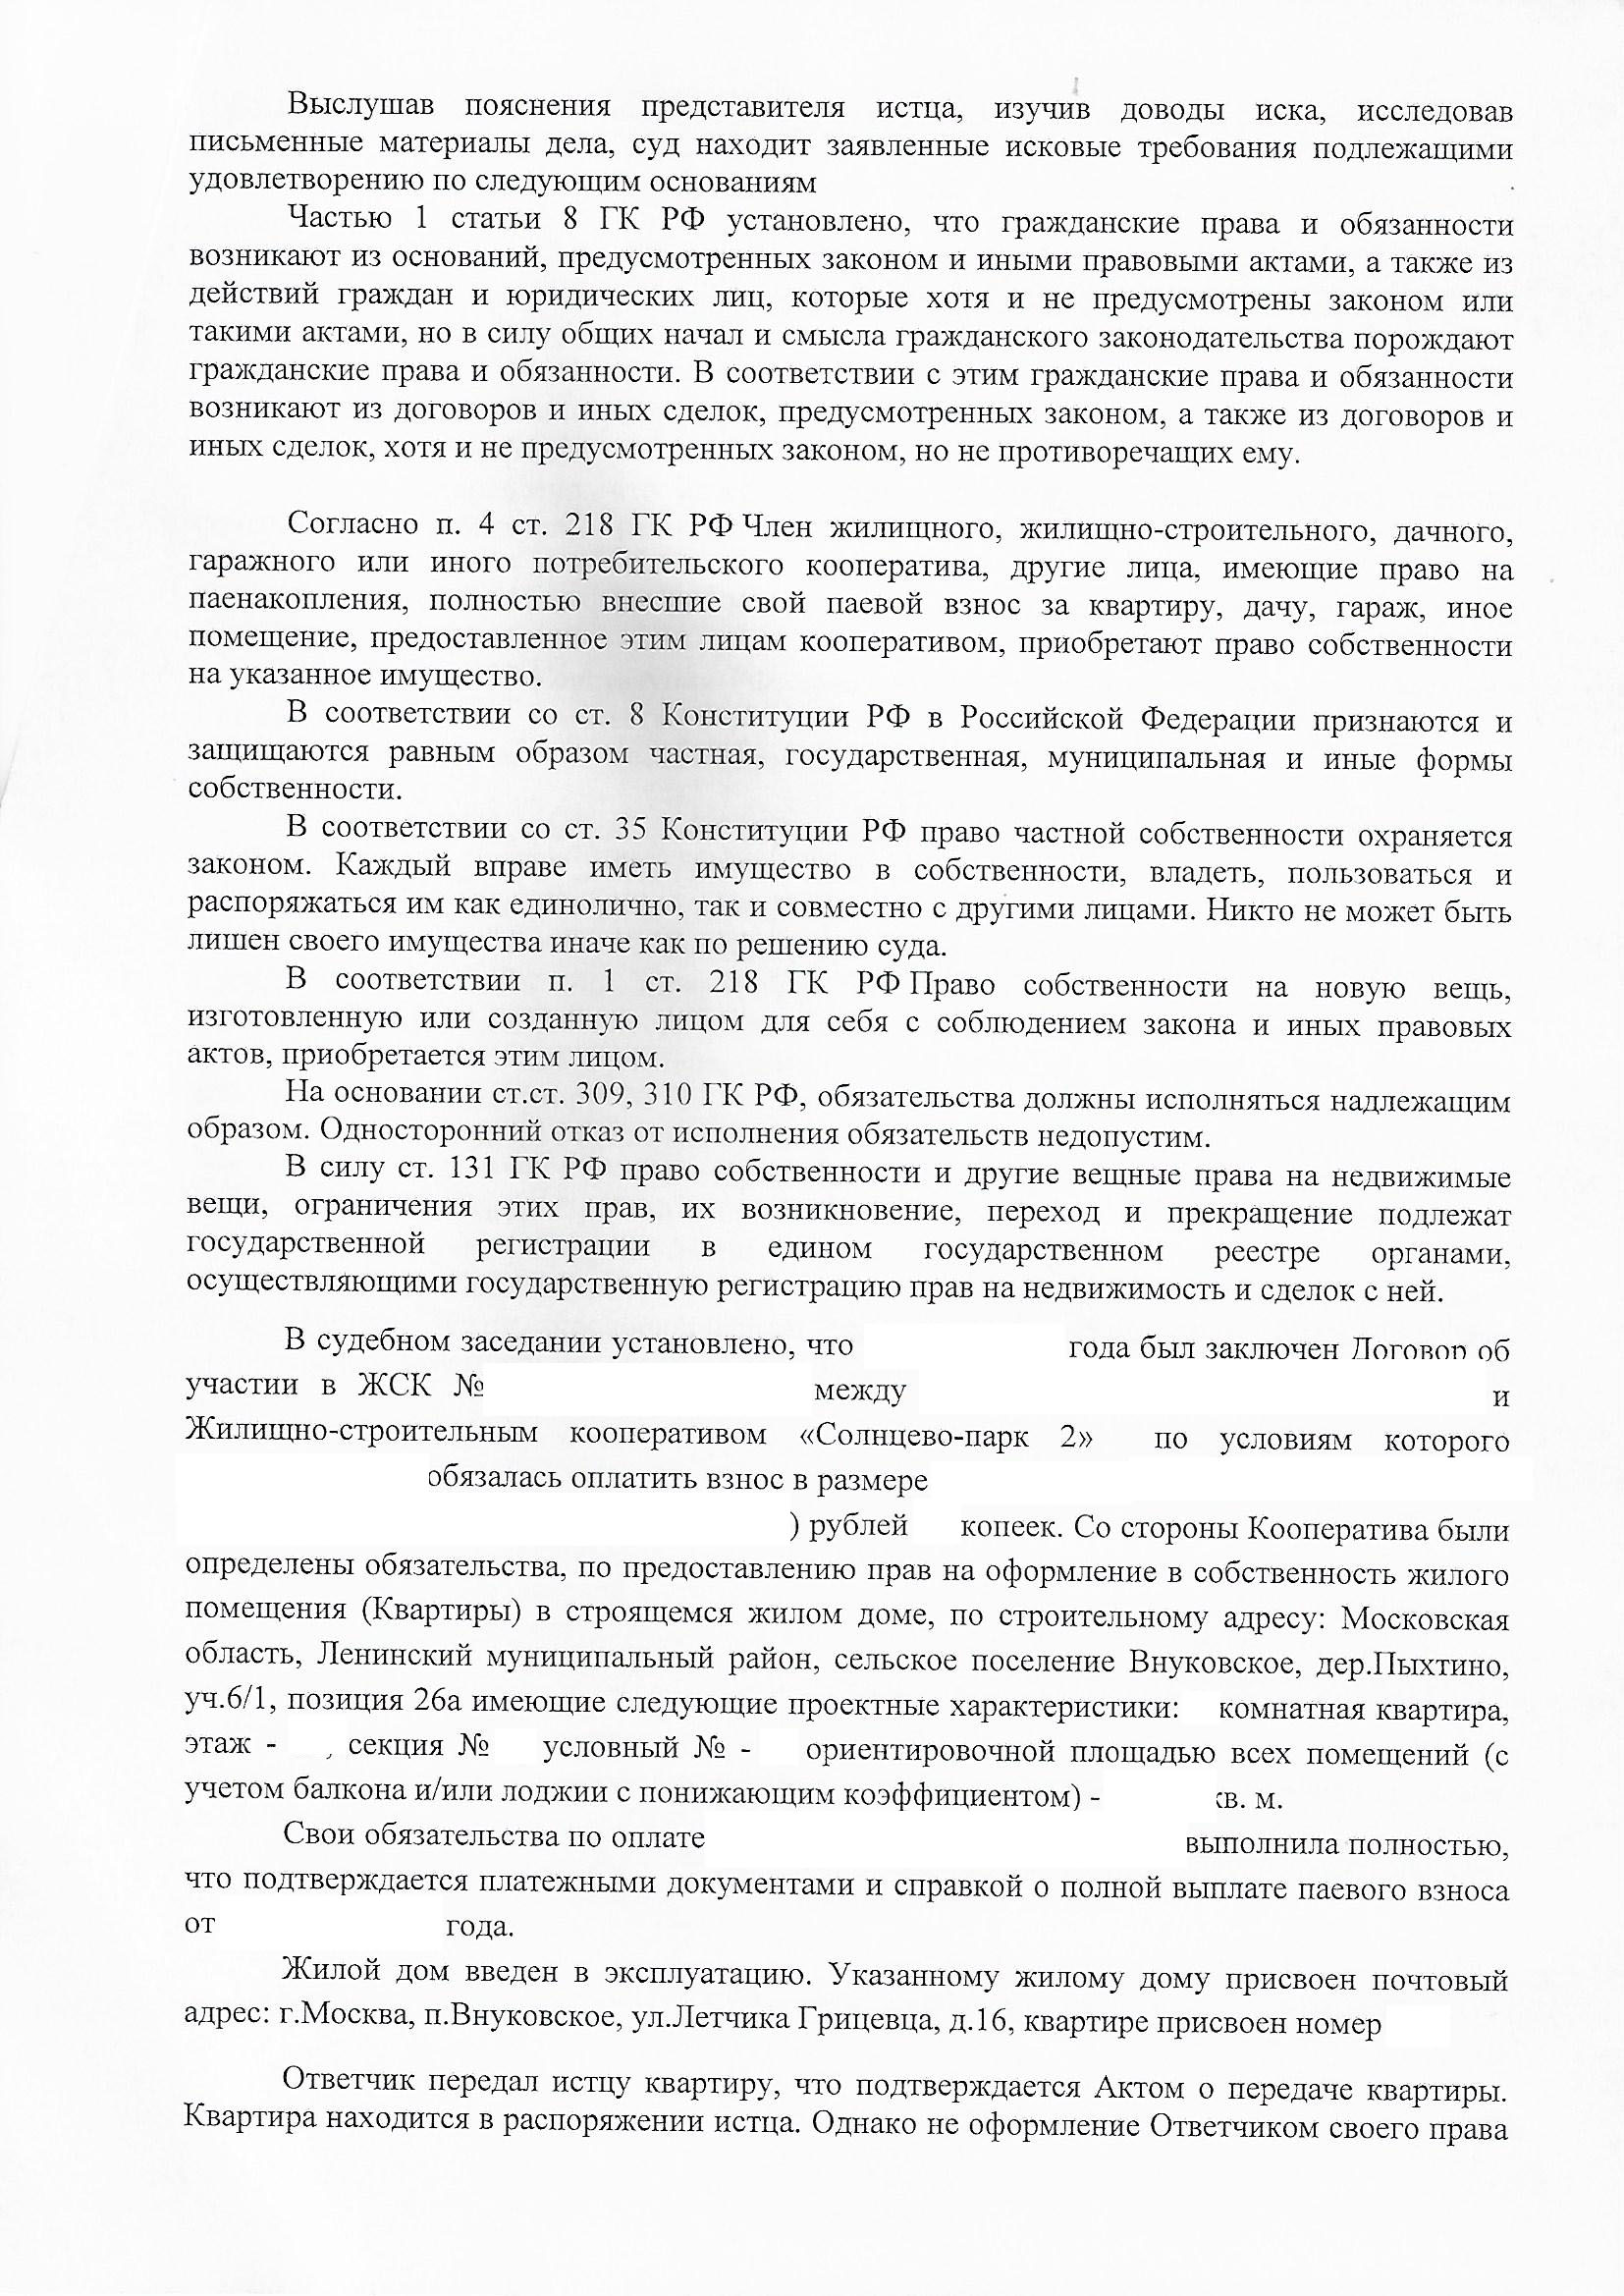 Судебное решение о признании права собственности ул. Летчика Грицевца д. 16